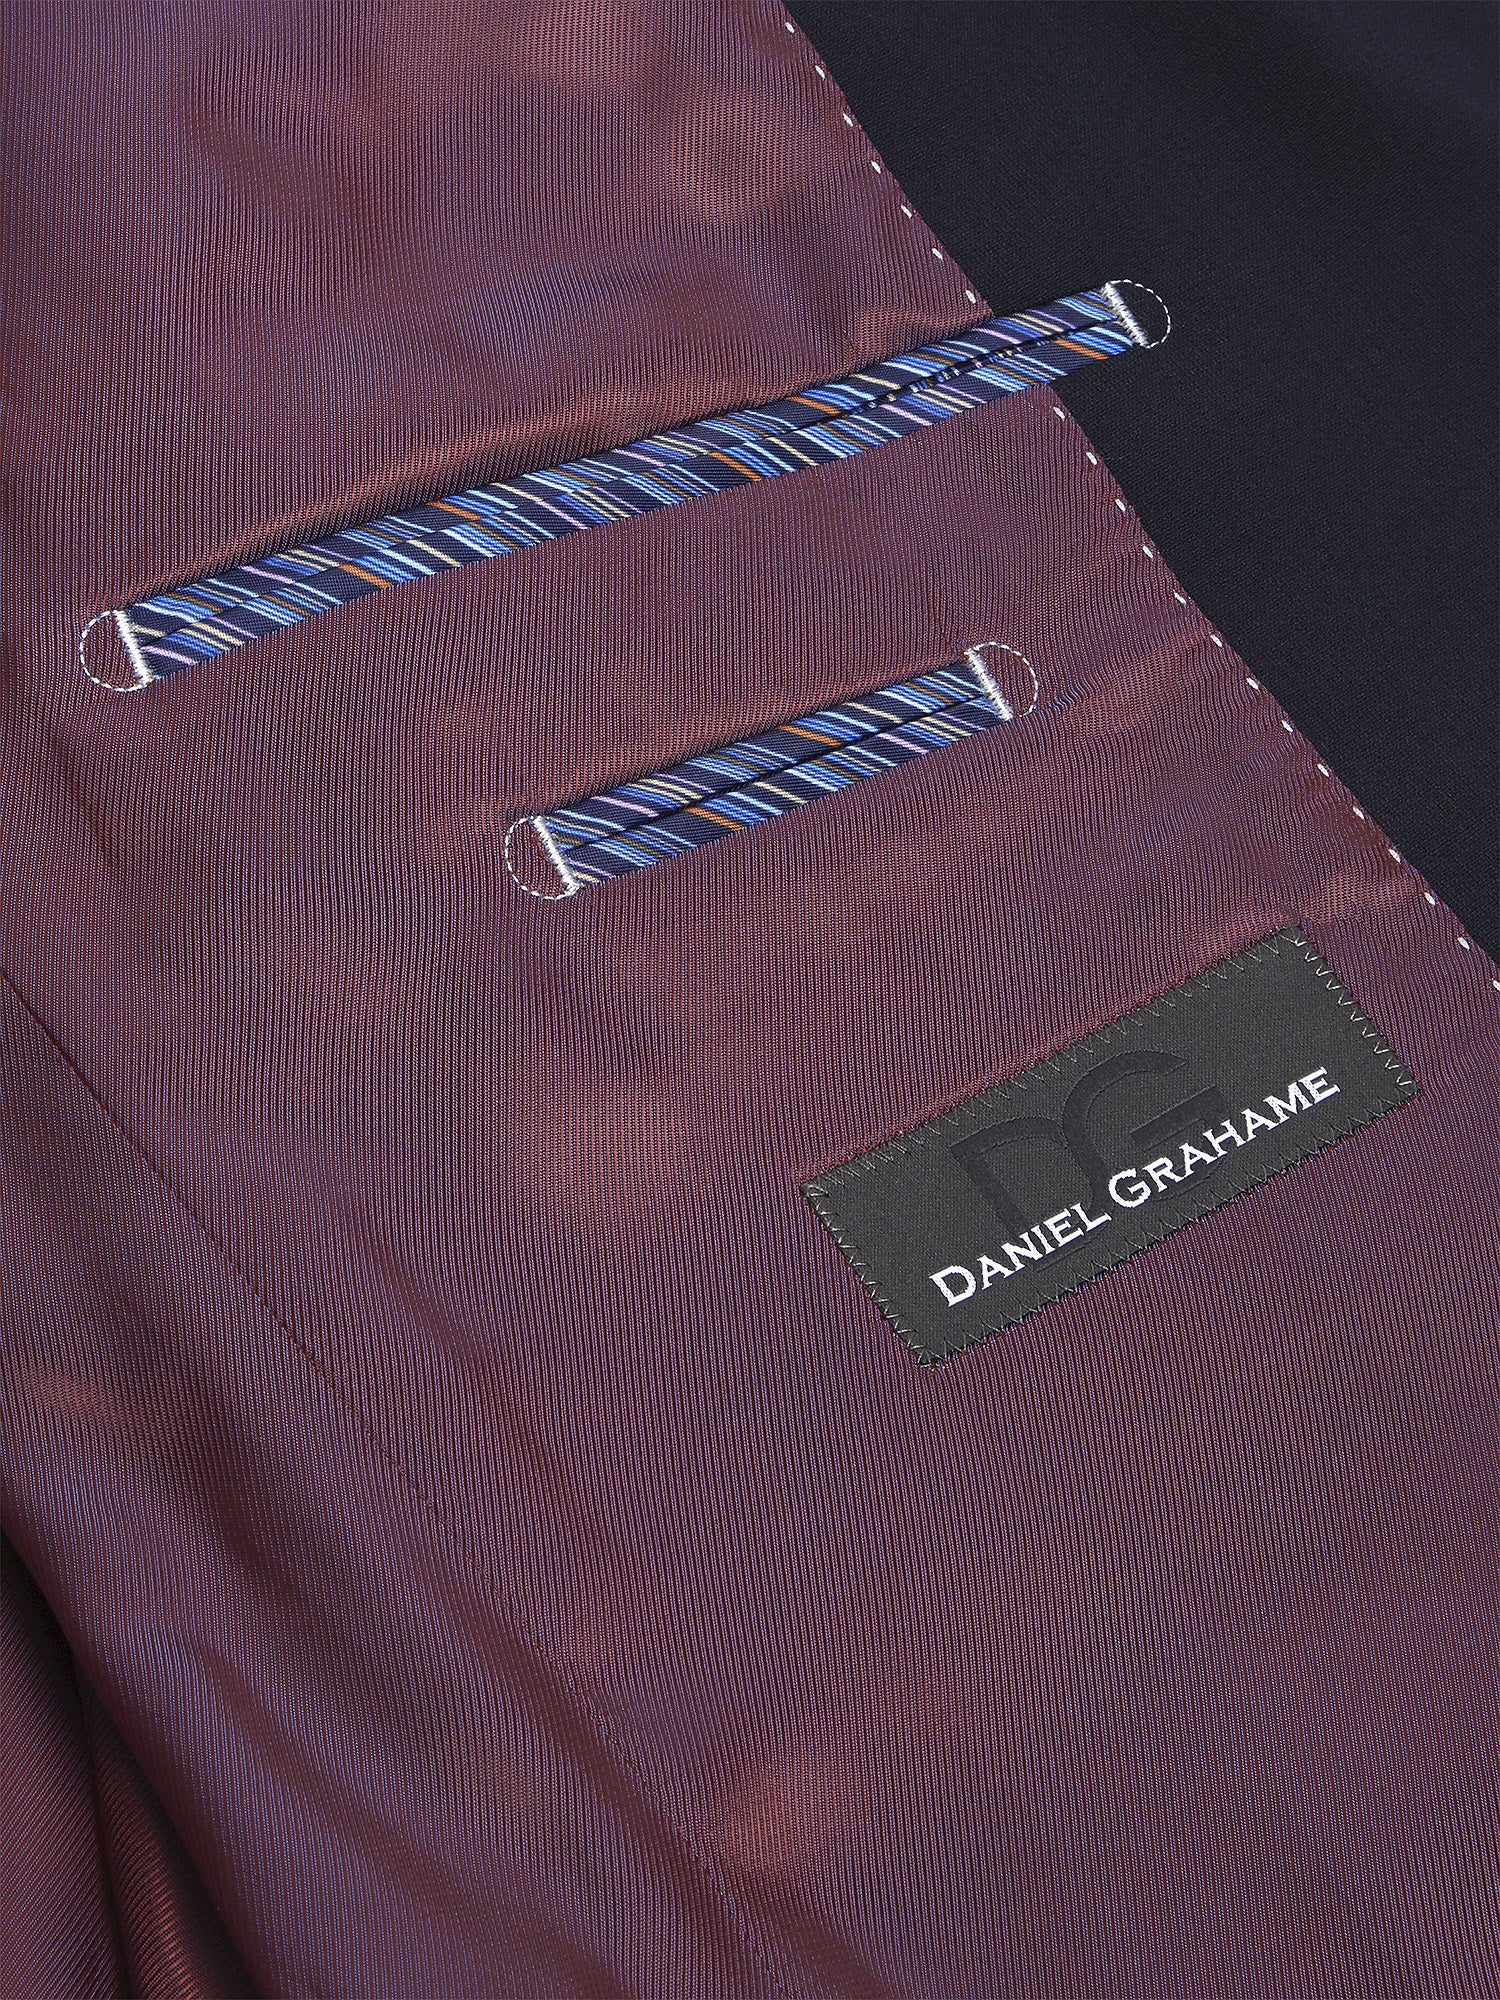 Daniel Grahame ... Dale Mix + Match Suit - Navy (030/78)